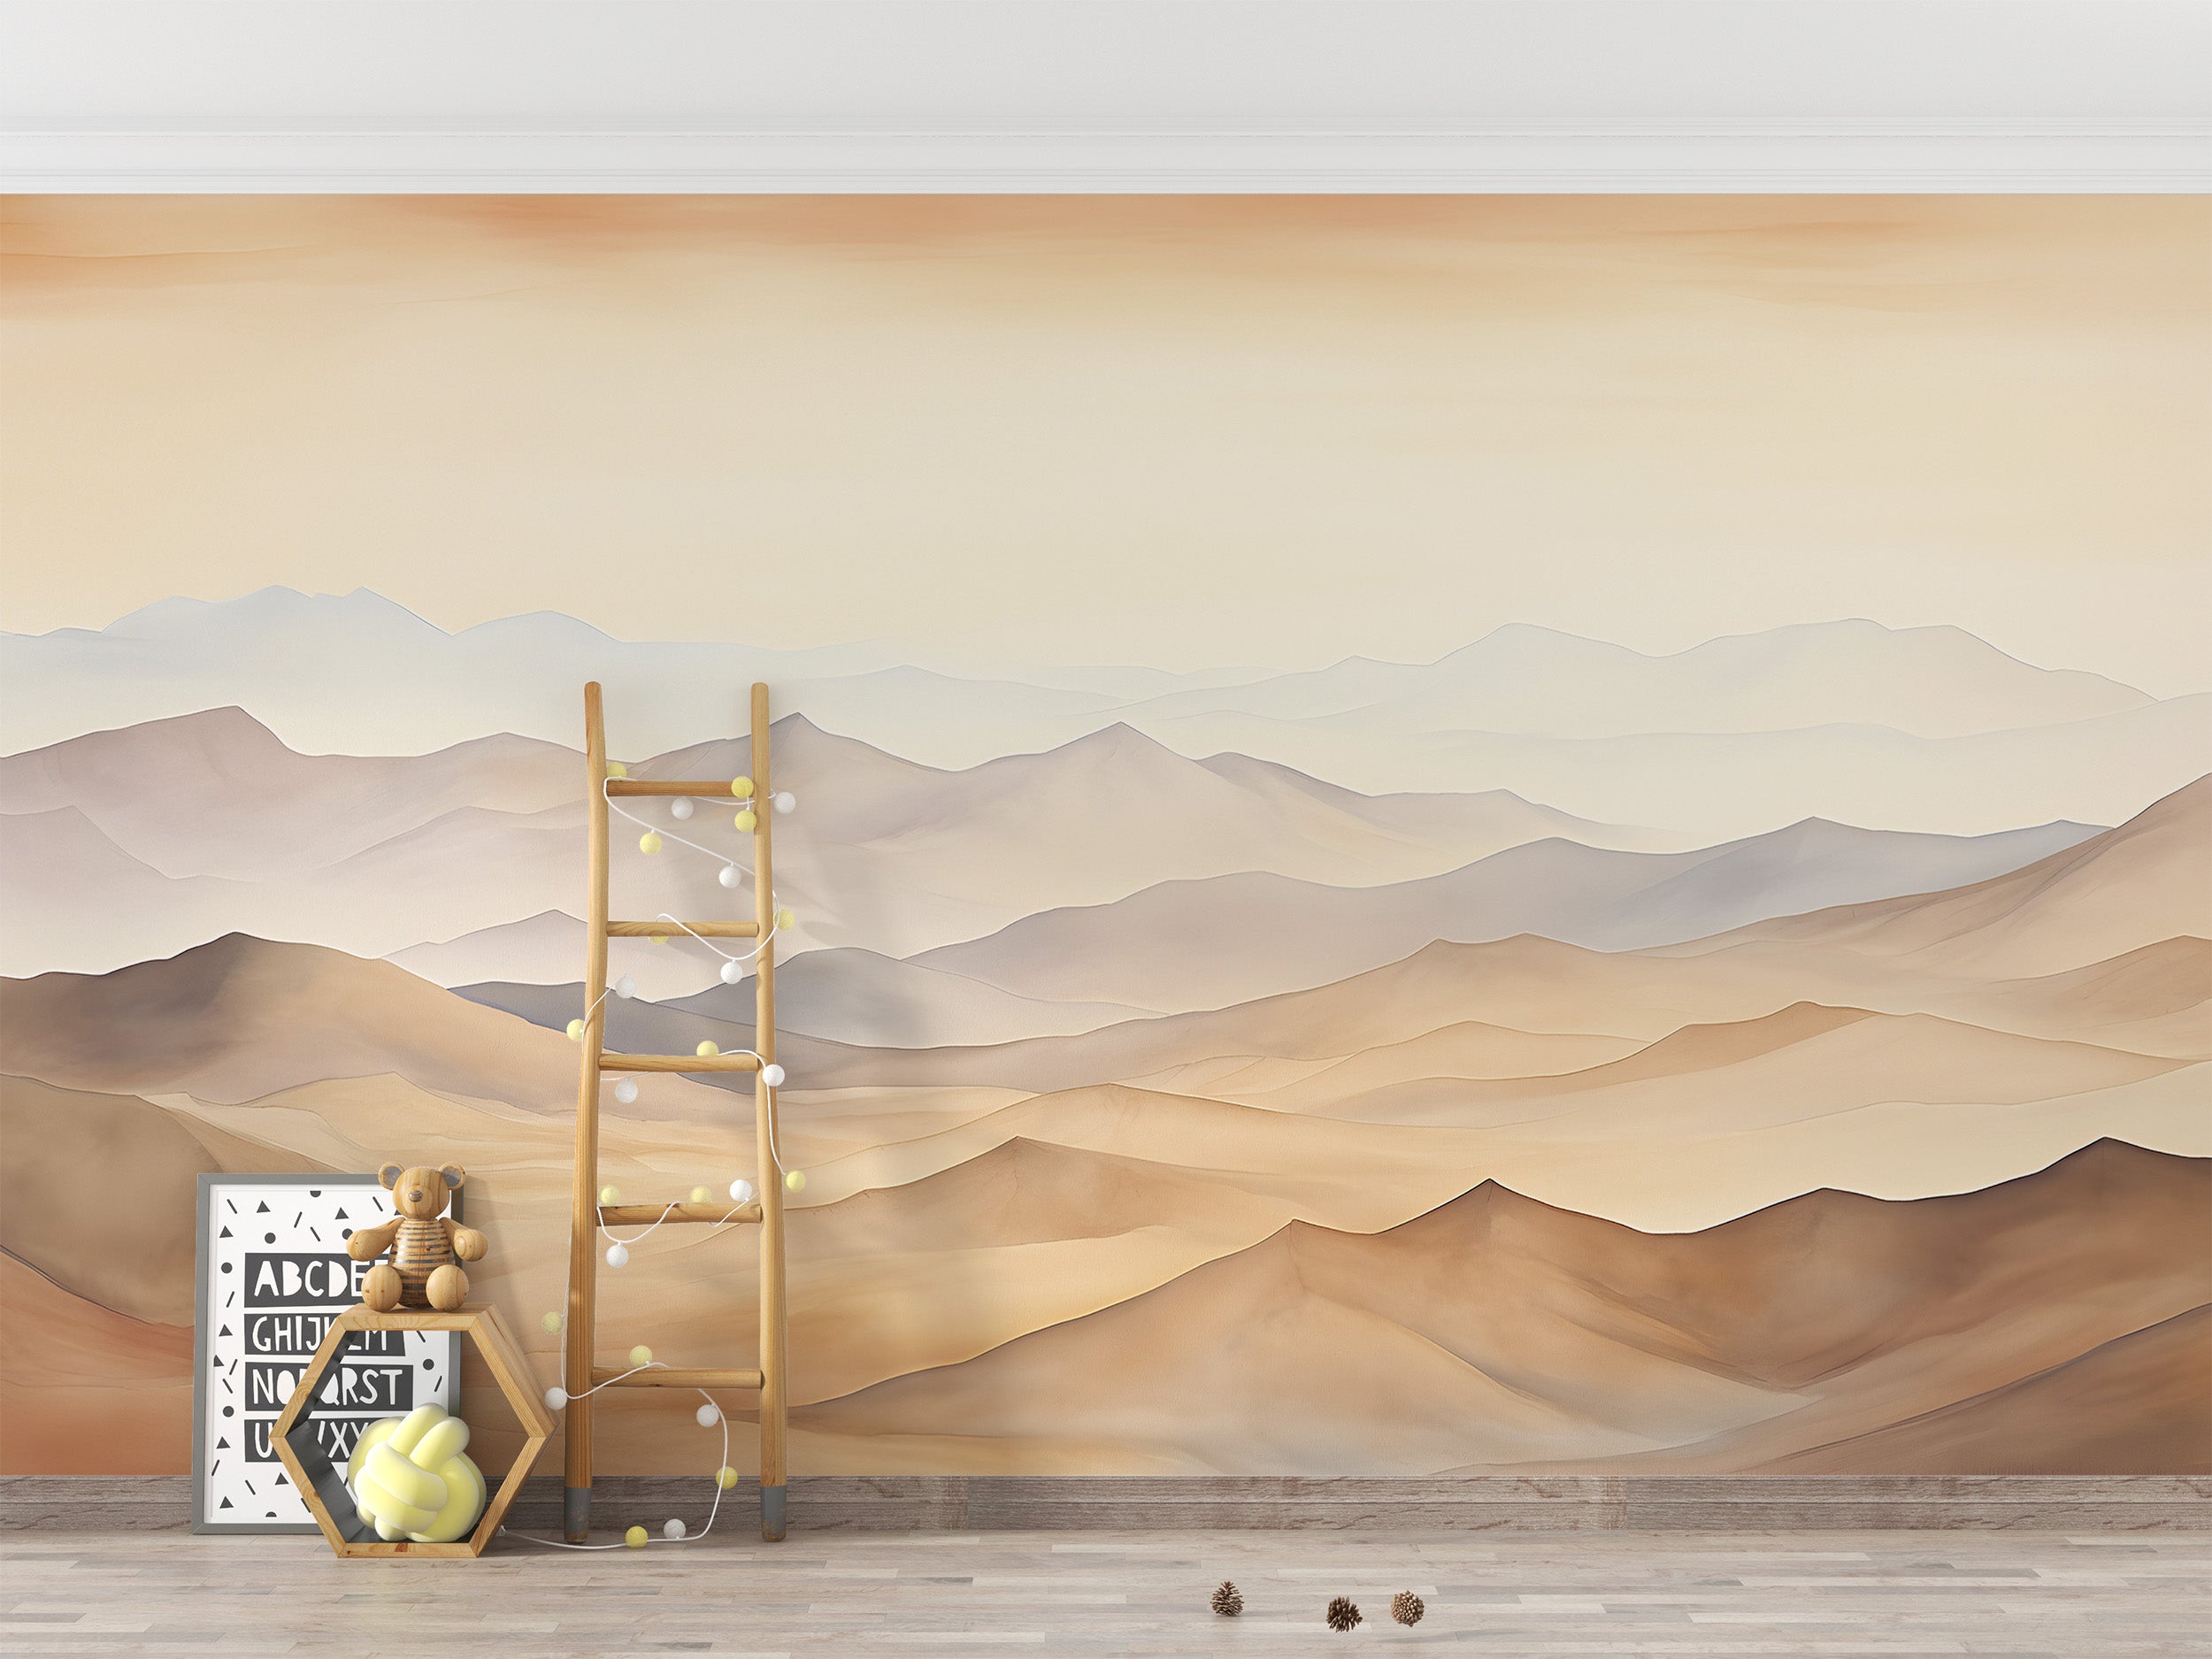 Peel and Stick Desert Landscape Wallpaper for Relaxation